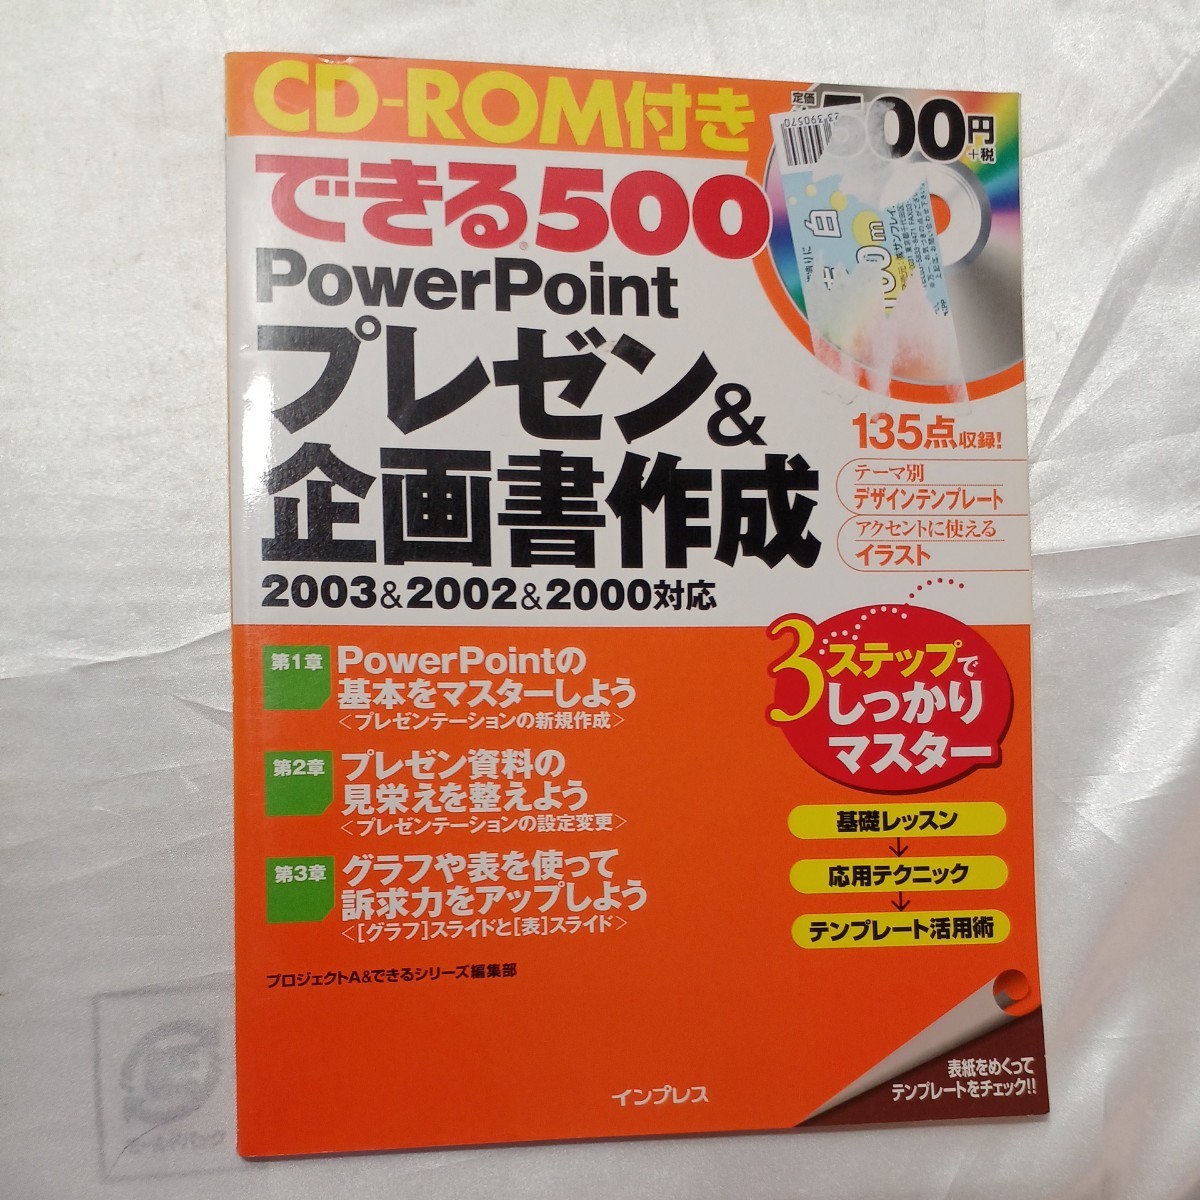 zaa-463! возможен 500 PowerPoint pre zen& план документ изготовление CD-ROM есть 2004/6/21